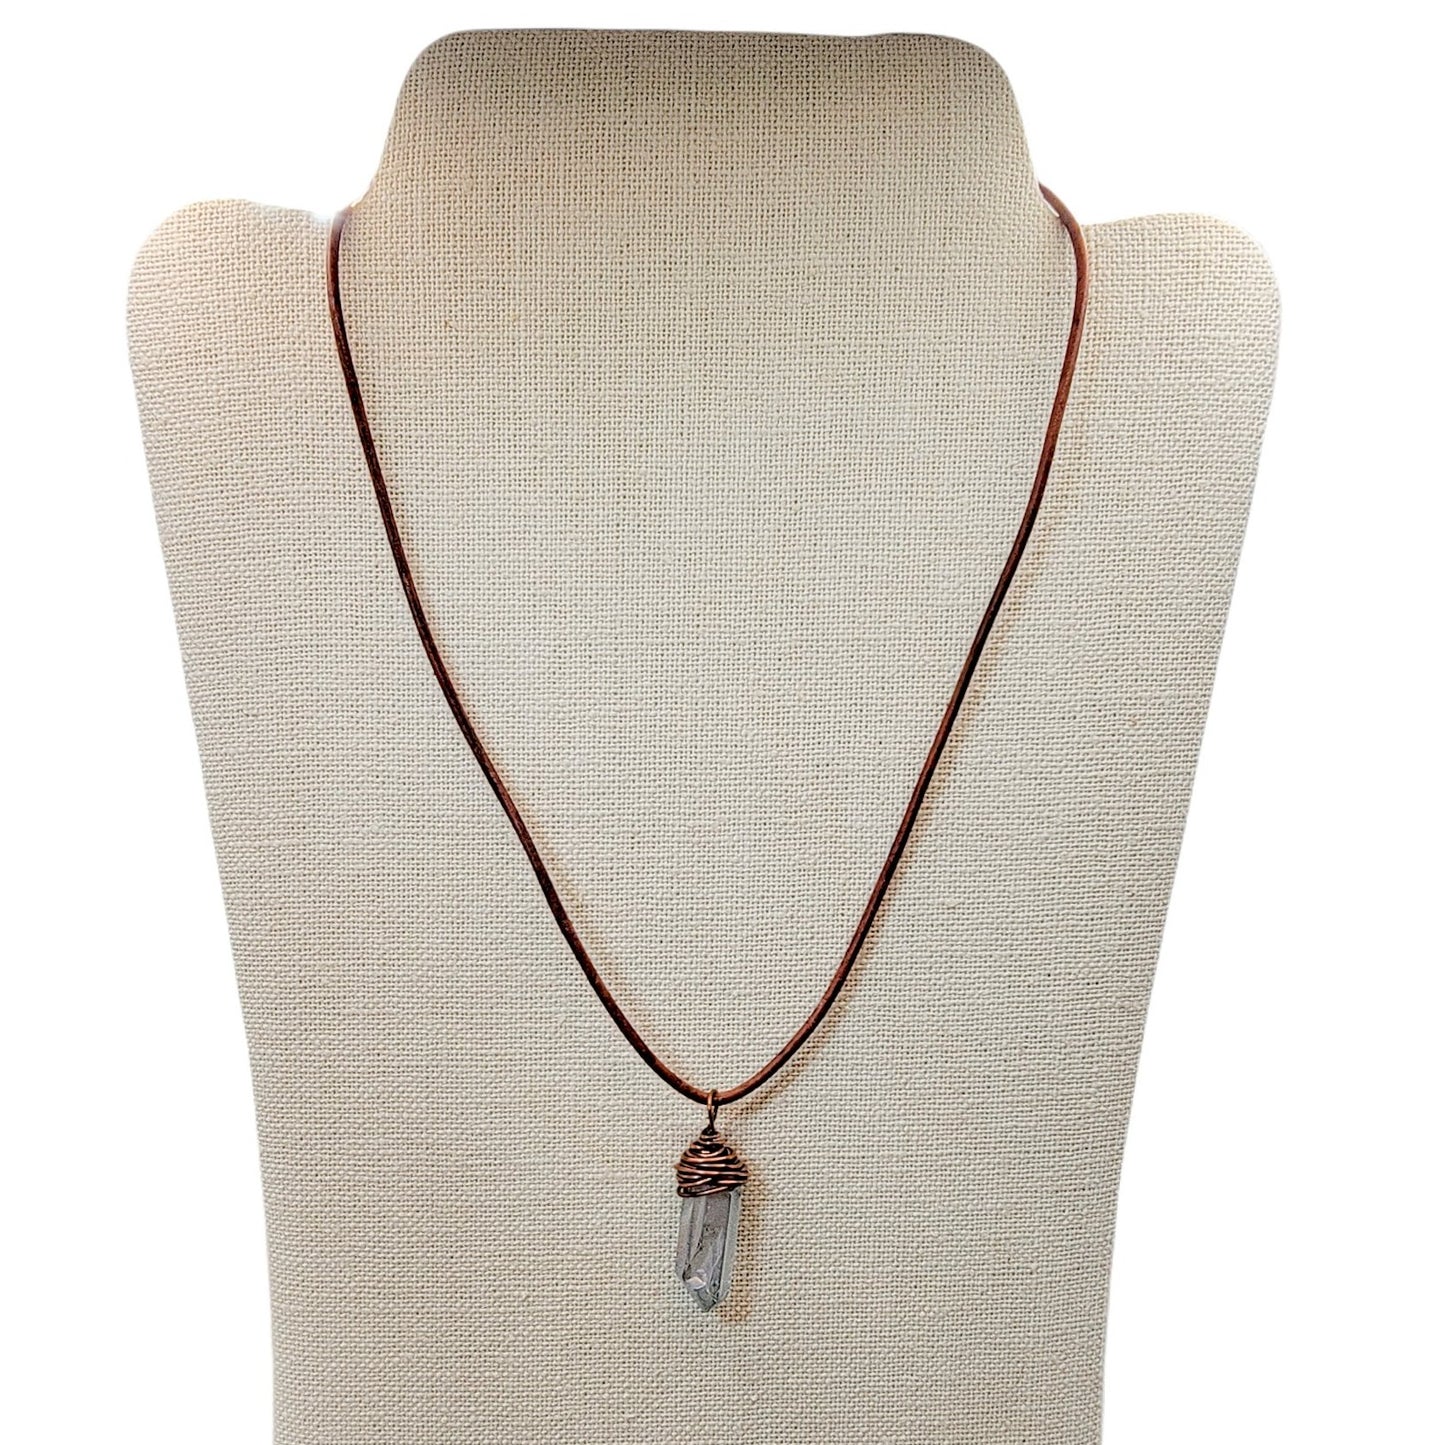 Copper Wire Wrapped Crystal Quartz Necklace - Nicki Lynn Jewelry